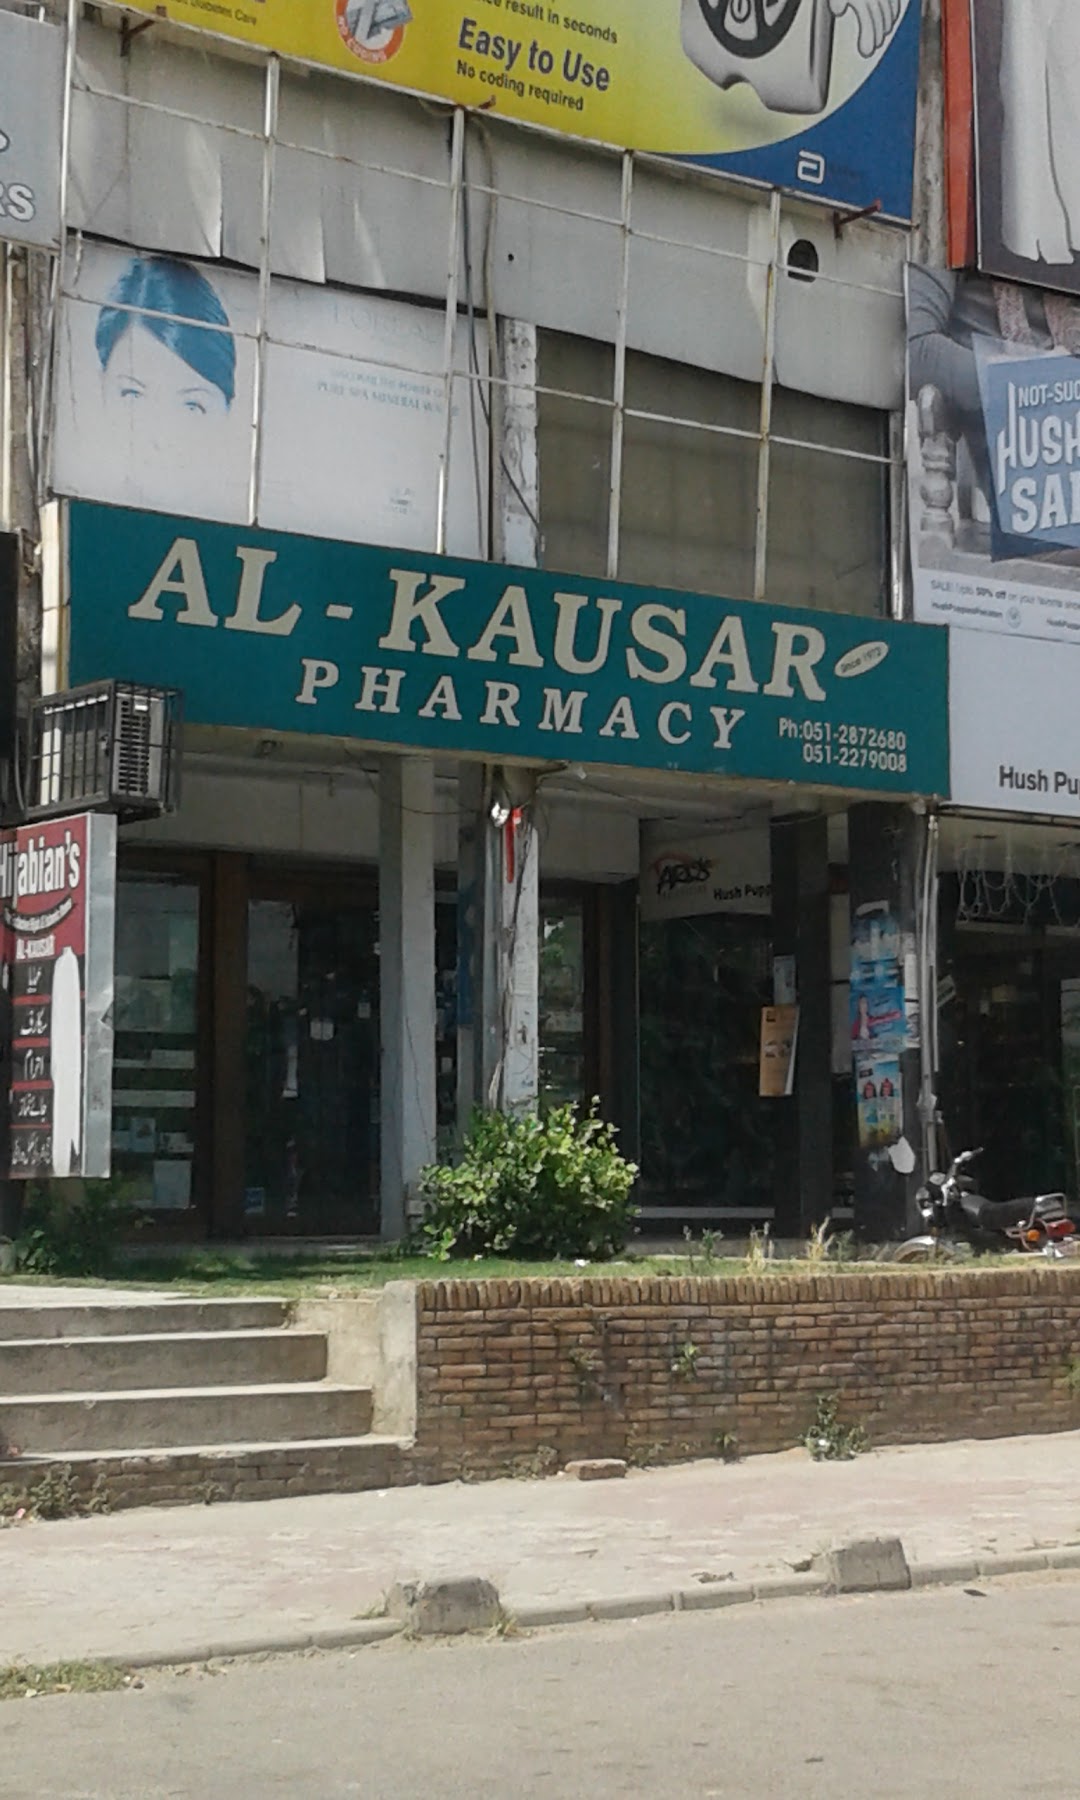 Al-Kausar Pharmacy